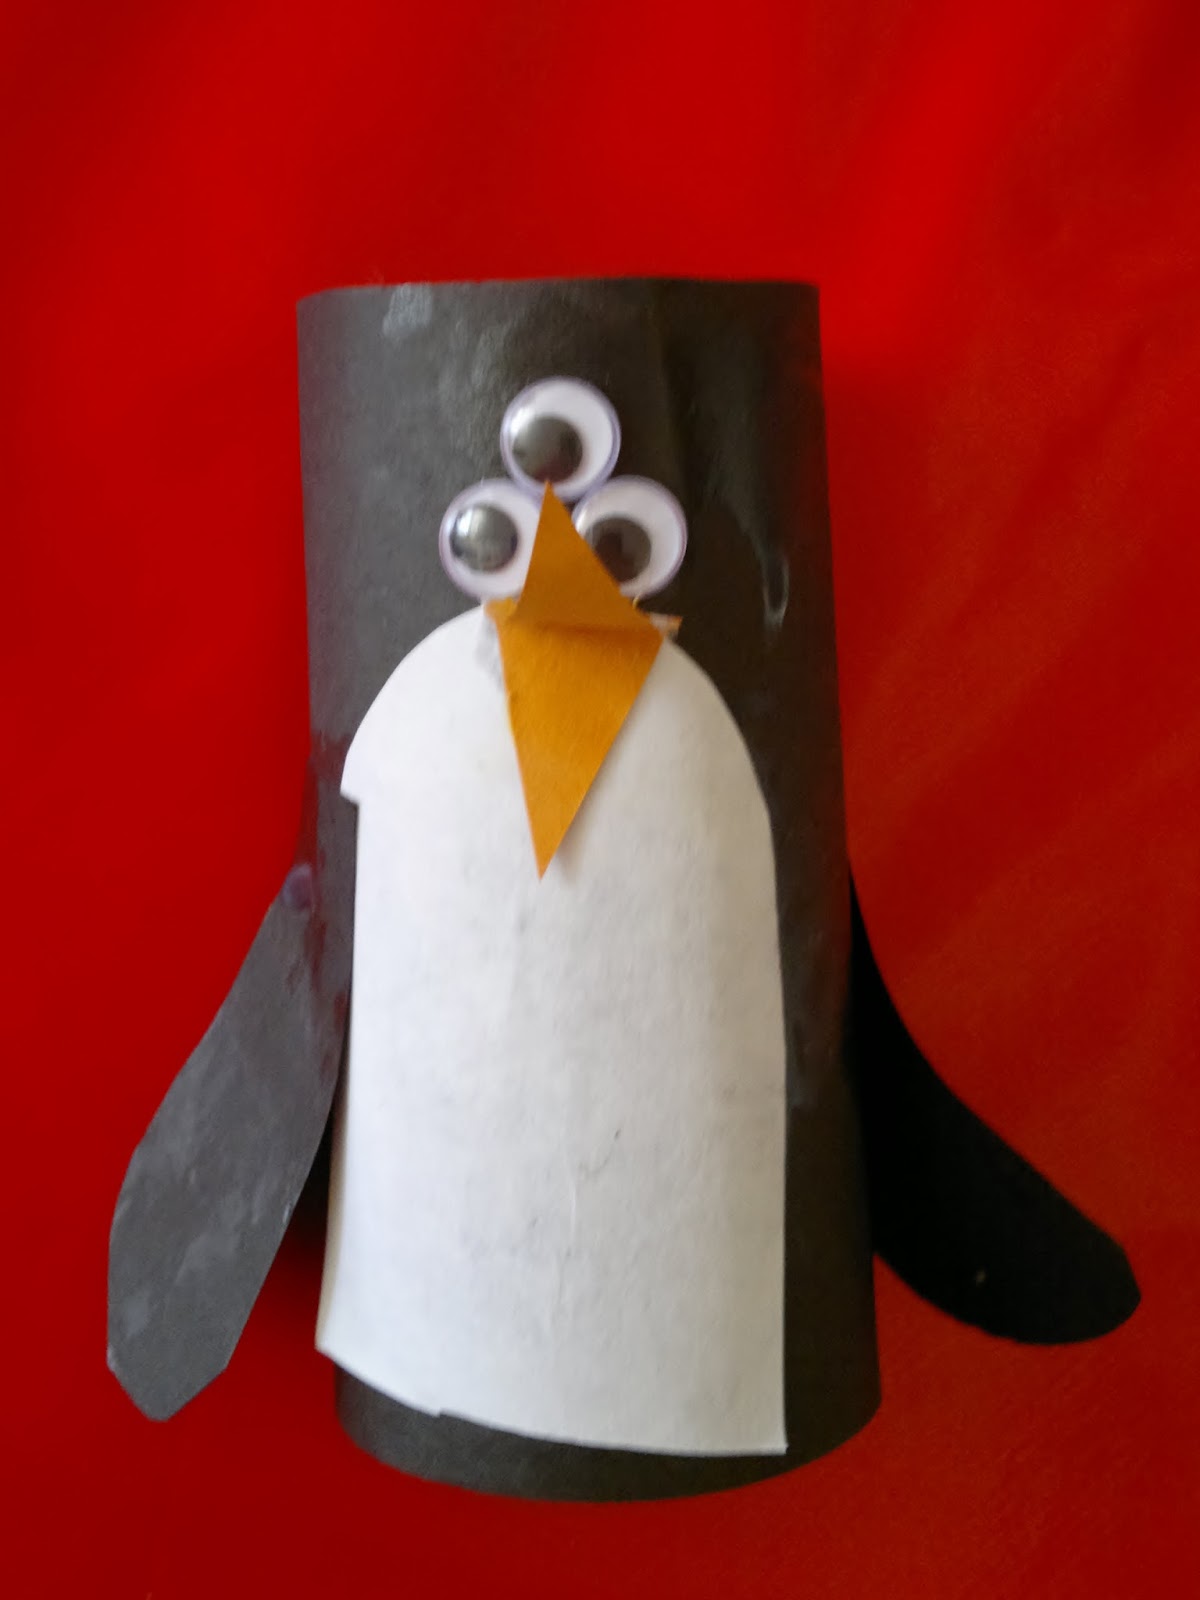 Joseph's alien penguin he made at group!